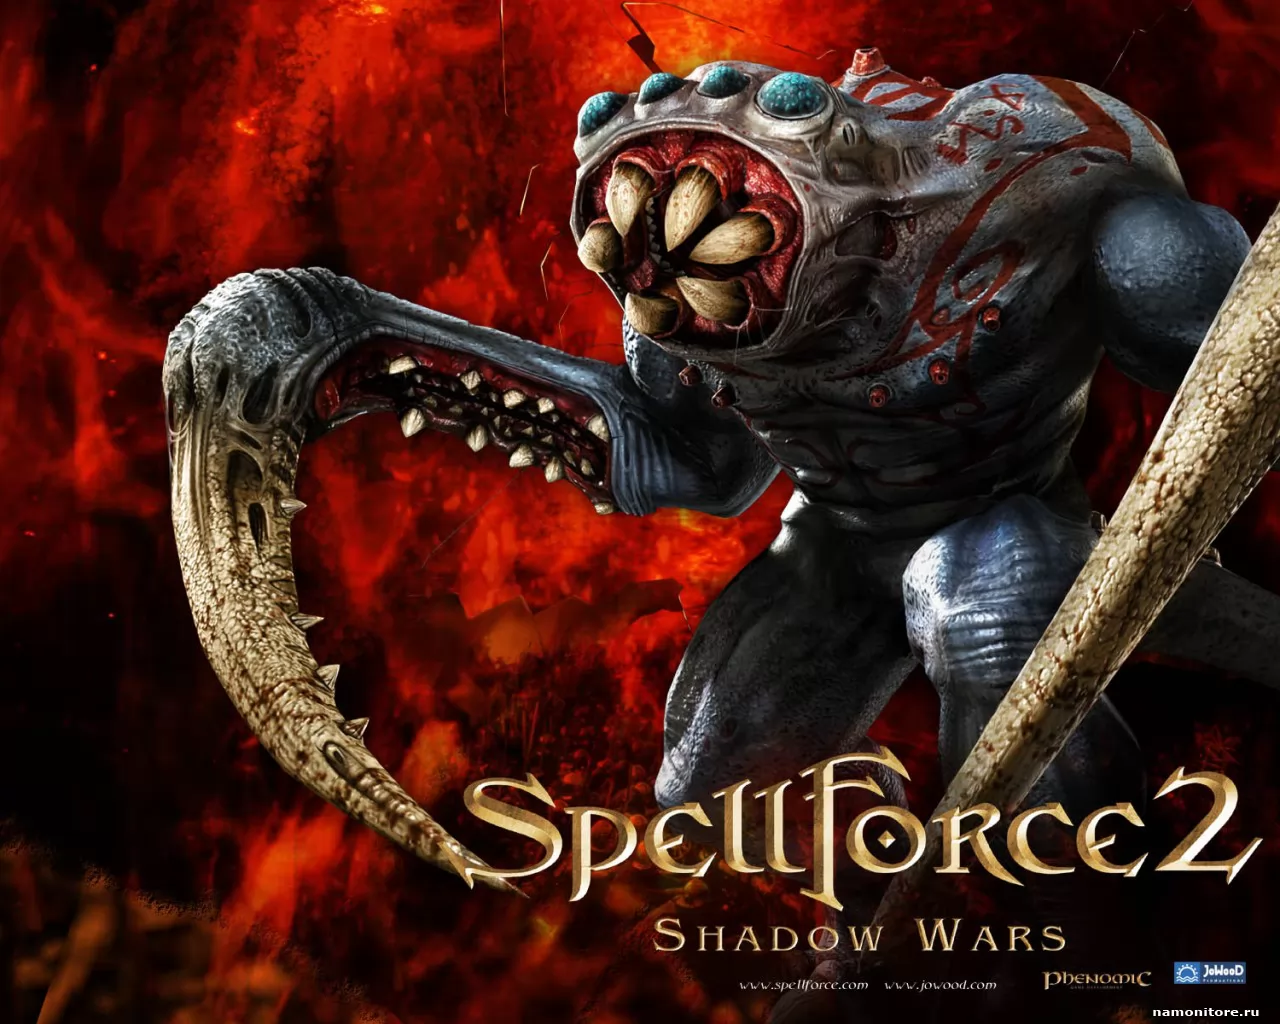 SpellForce 2: Shadow Wars,  ,  